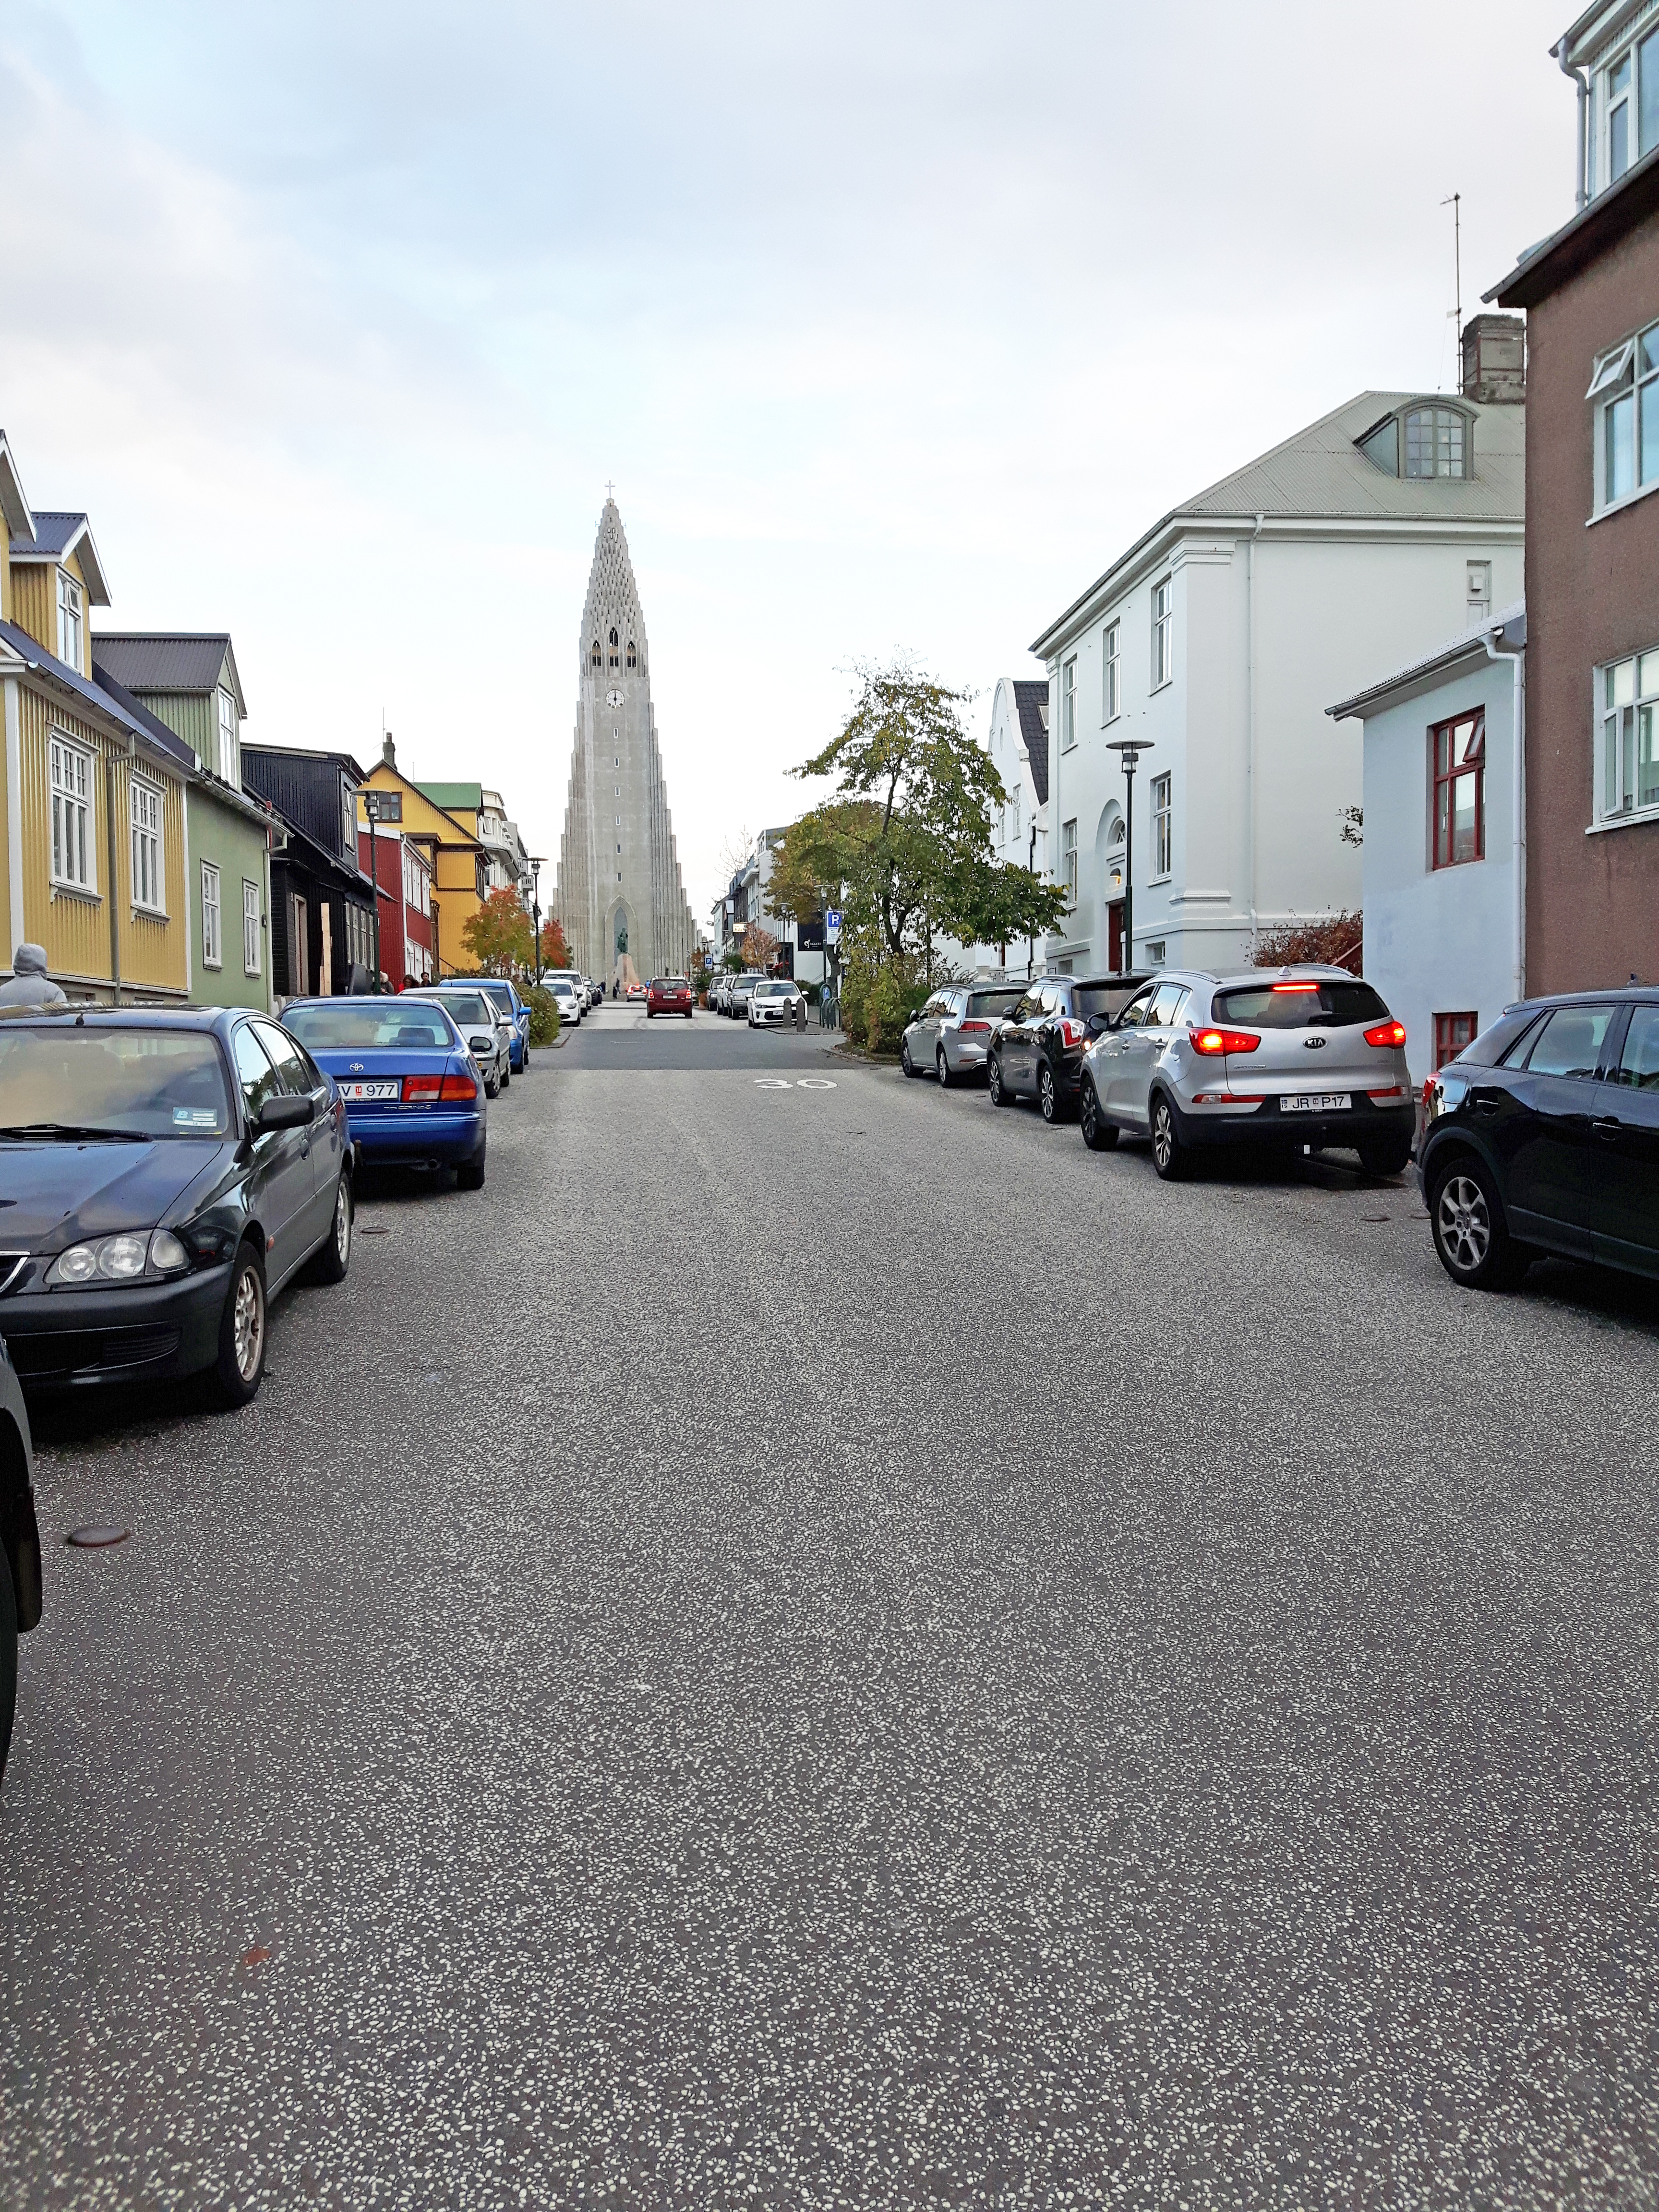 Streets_of_Reykjavik_Iceland